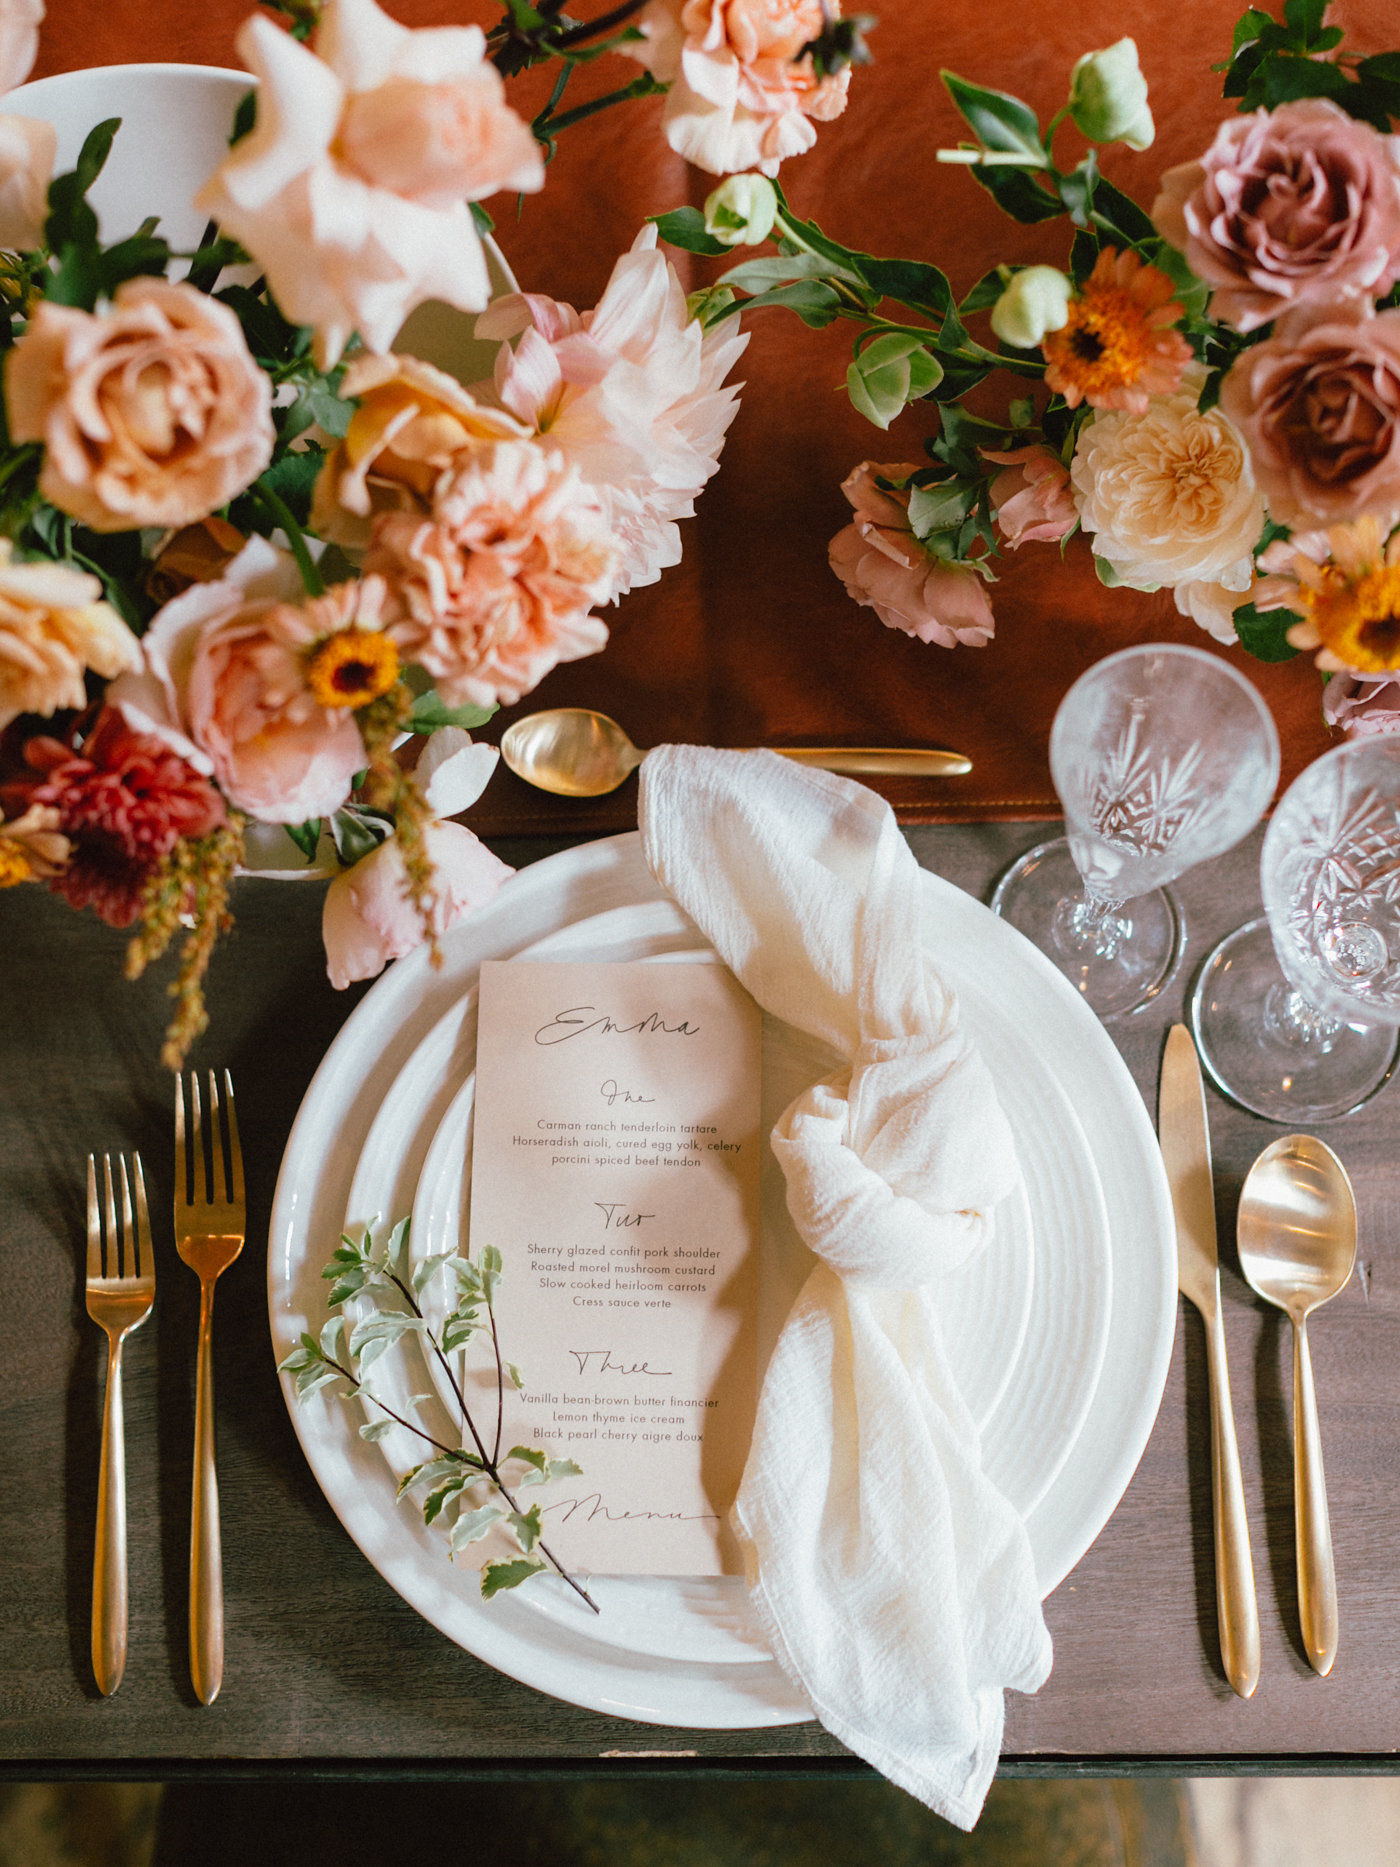 romantic table setting